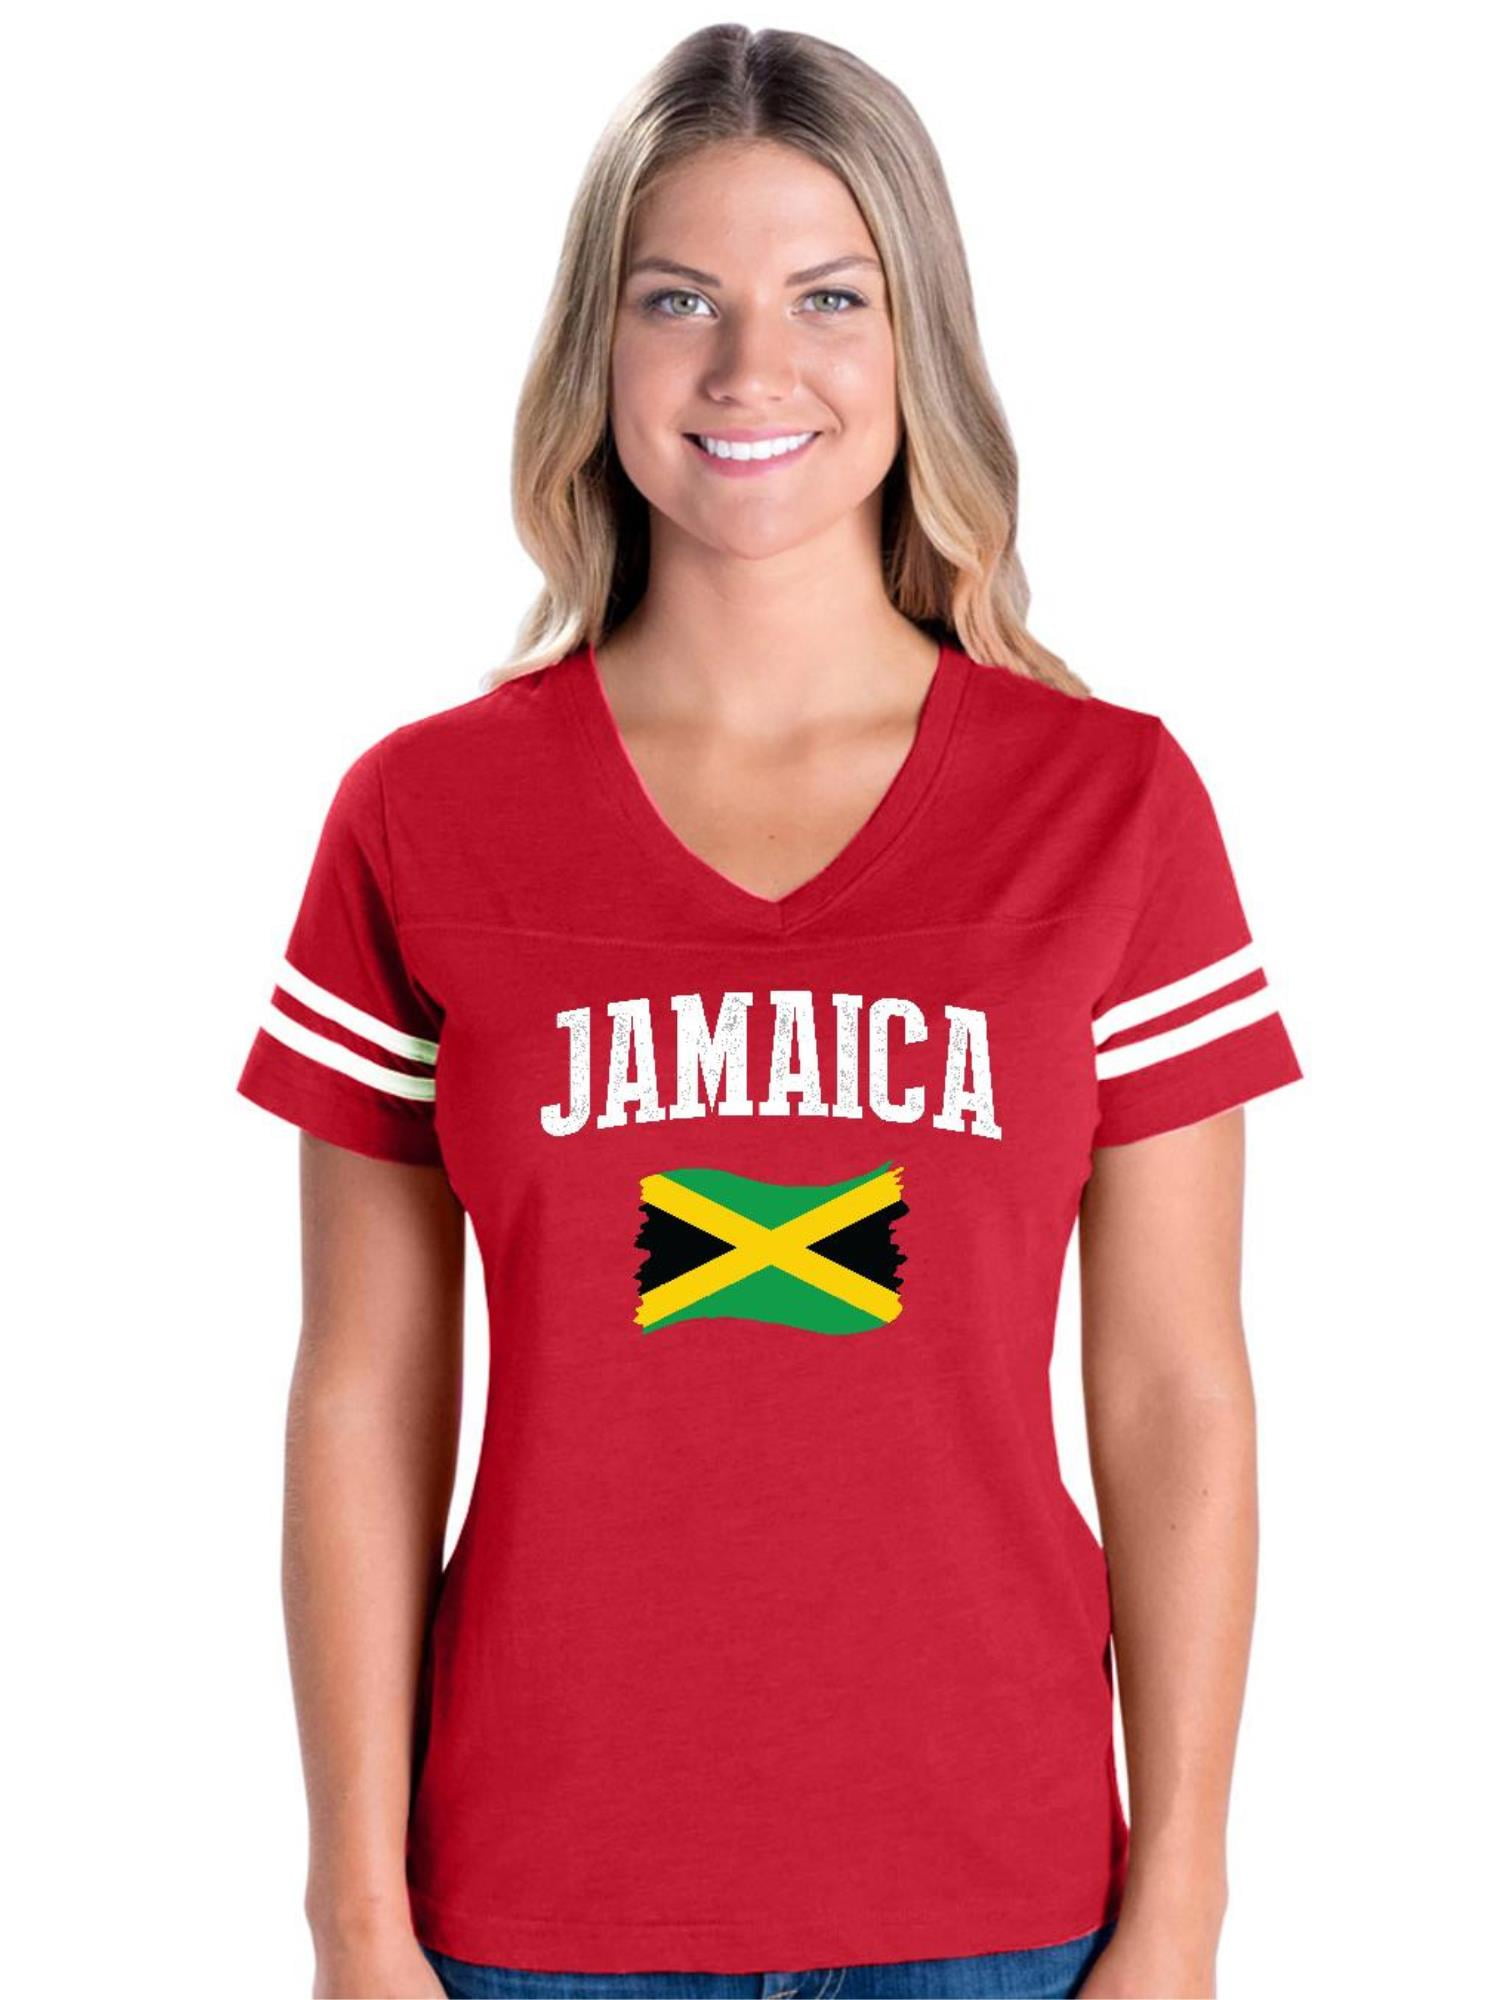 IWPF - Womens Football Fine Jersey T-shirts - Jamaica Flag